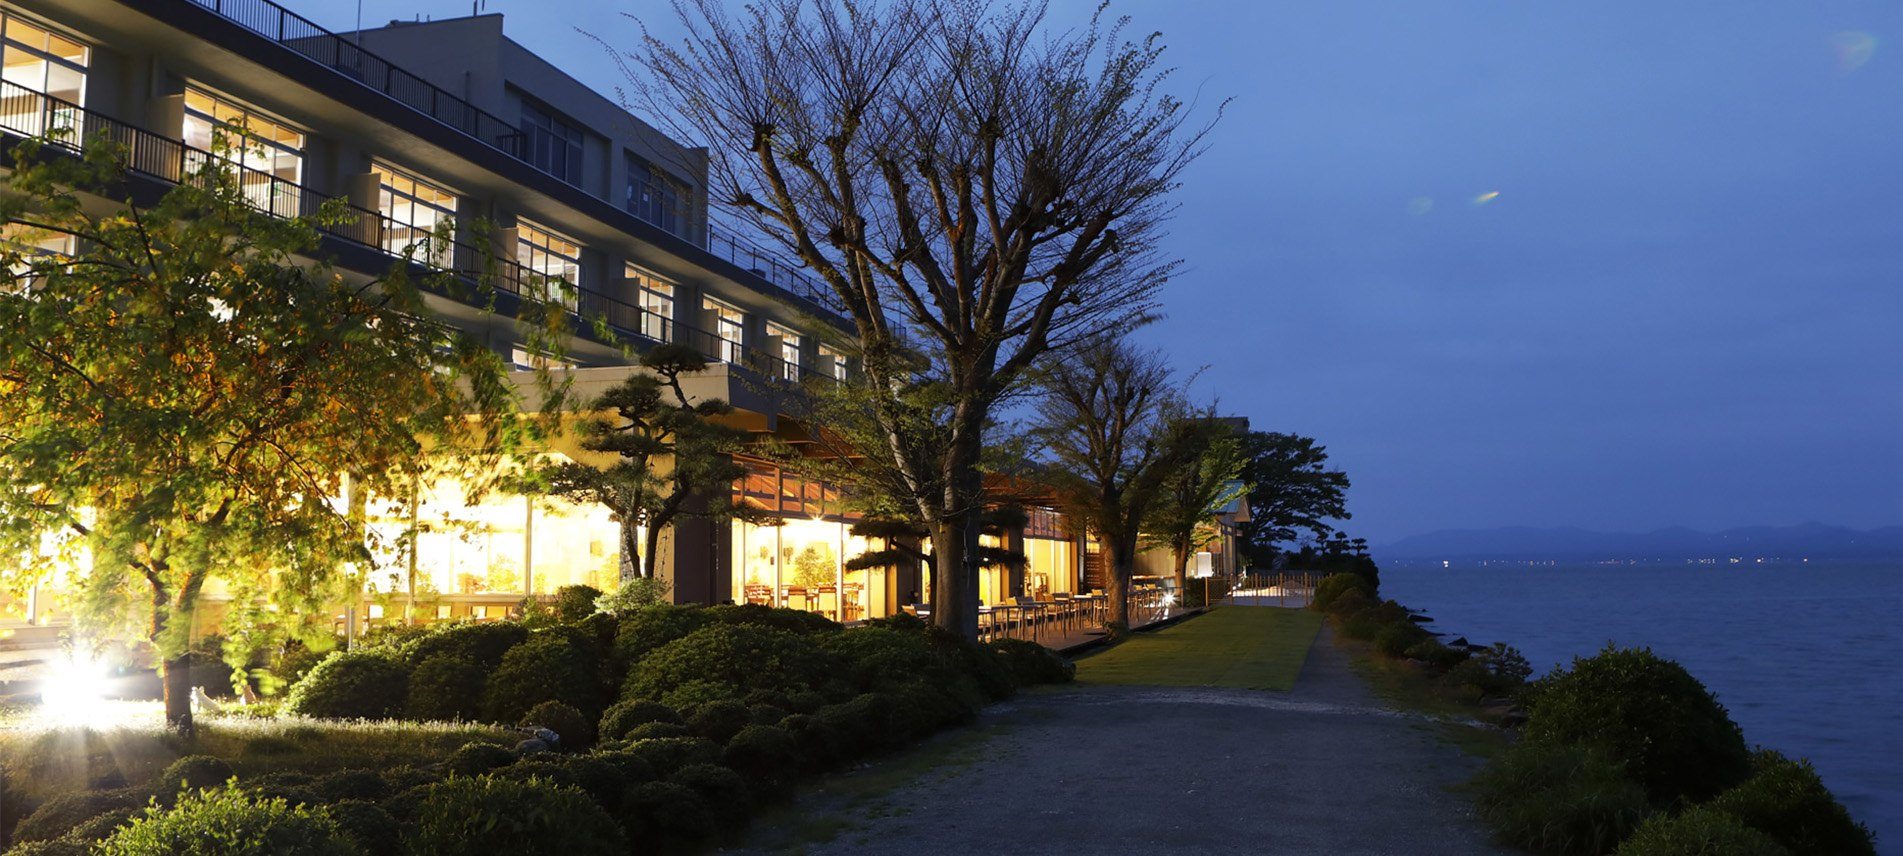 ホテル外観と宍道湖